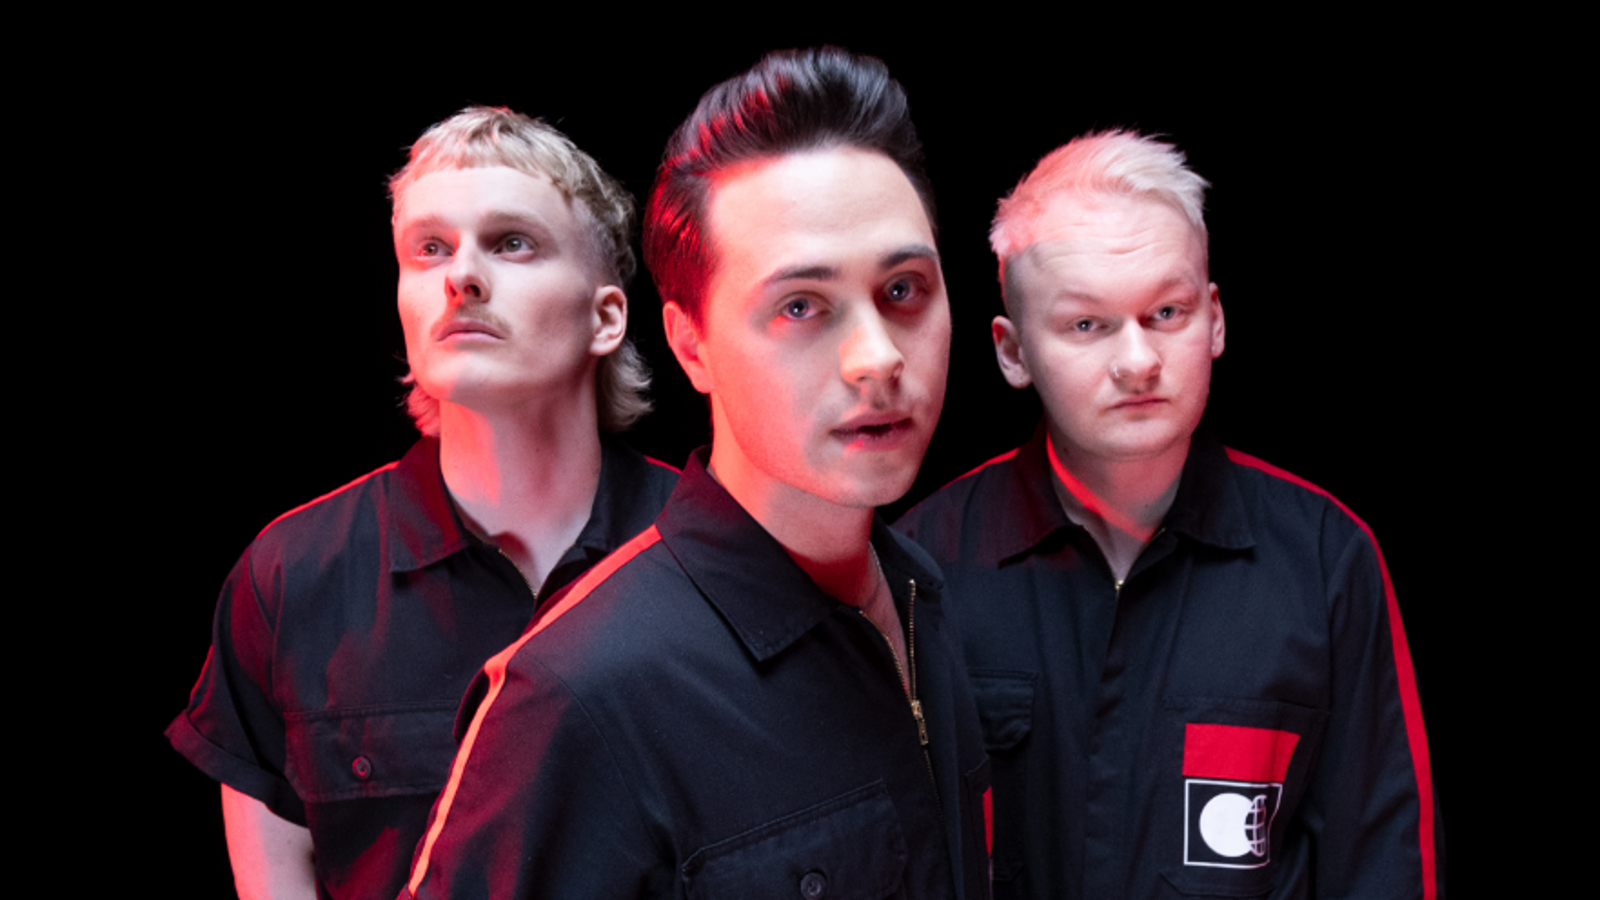 Kuvassa ovat KUUMAA yhtyeen kolme jäsentä puolivartalokuvassa. He ovat tiiviisti ryhmänä ja etummaisena on Johannes Brotherus.  Kaikilla on mustat t-paidat, joissa on punaiset raidat reunoissa.  Tausta on musta.